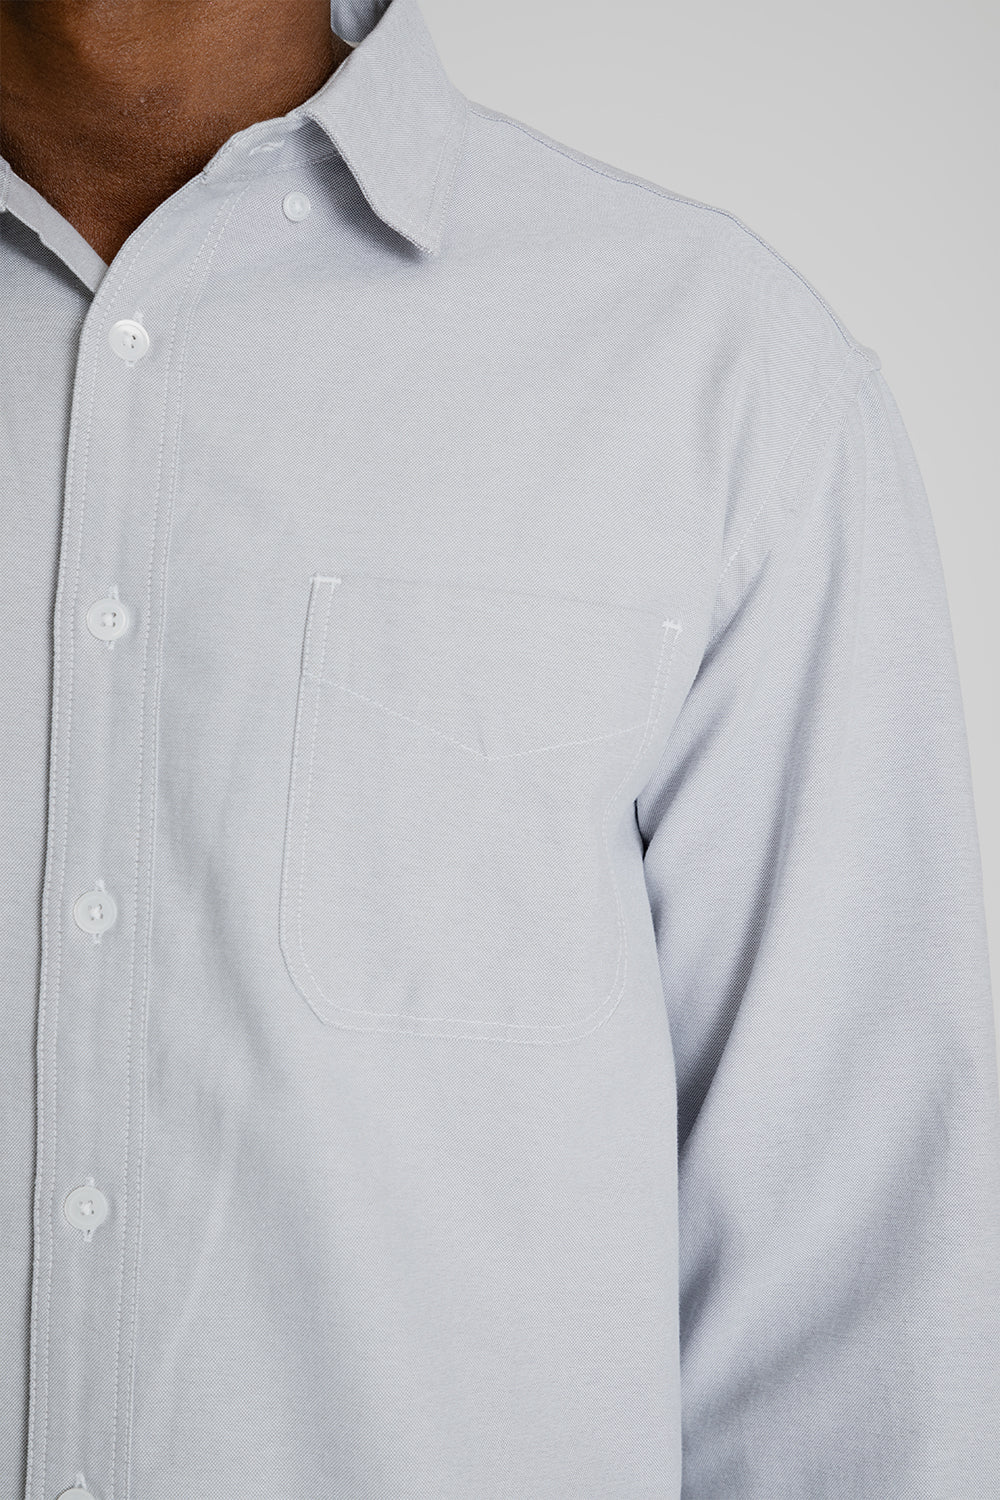 Frizmworks OG Oxford Oversized Shirt Gray Detail 02